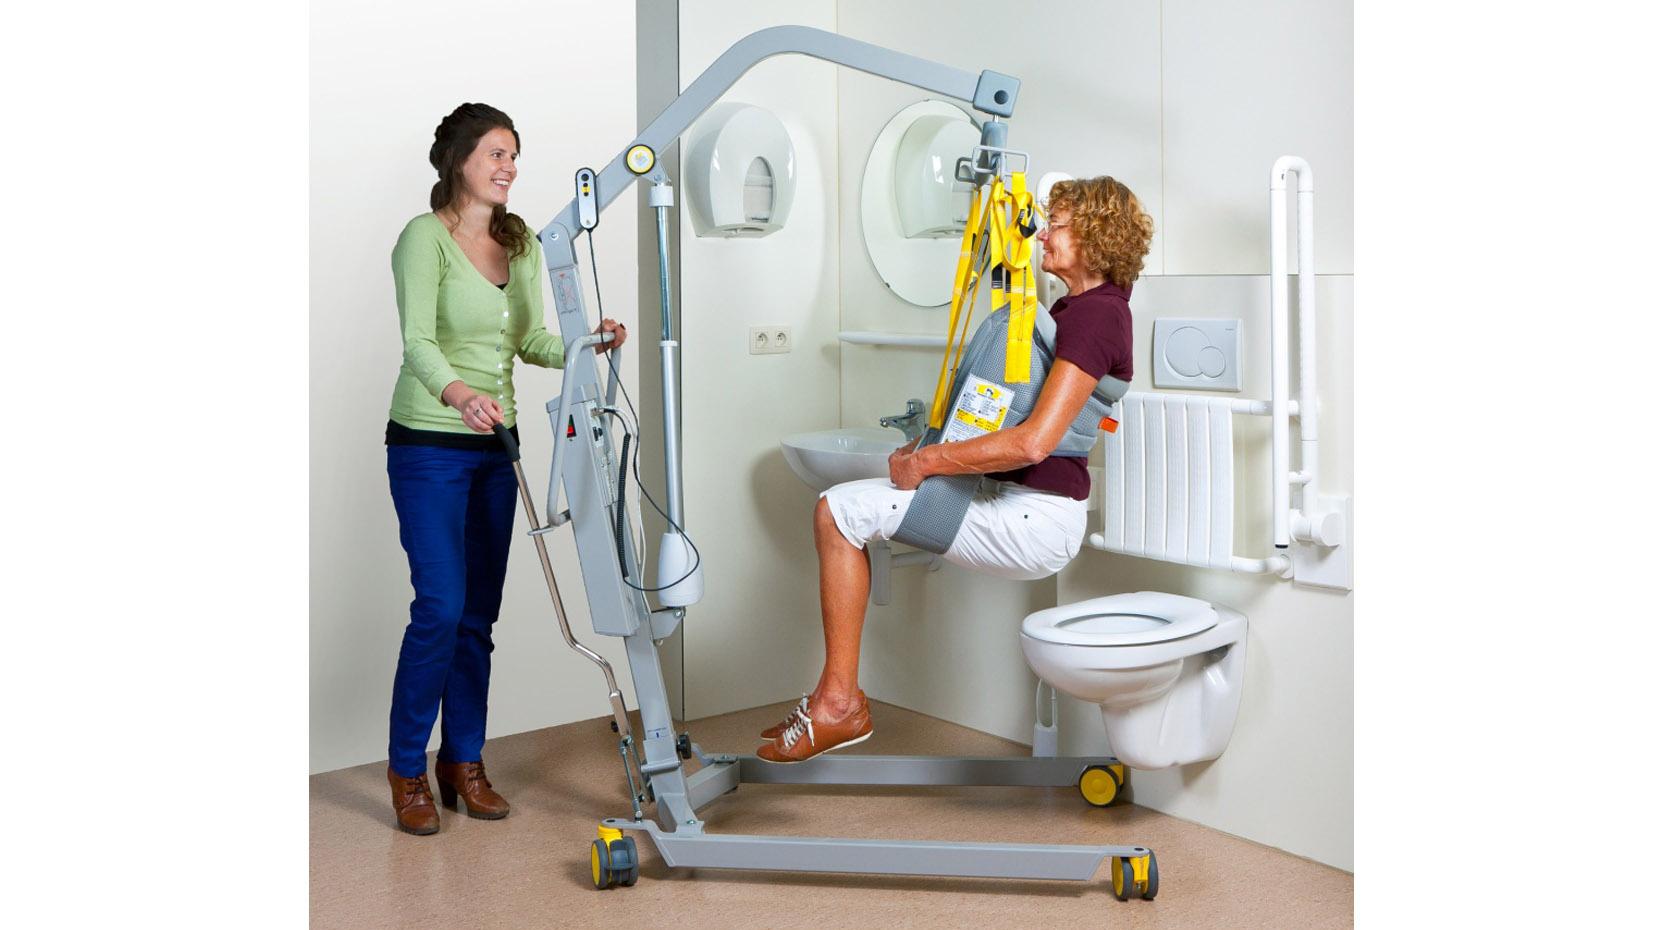 Umsetzbeispiel vom mobiler Patientenlifter auf die Toilette